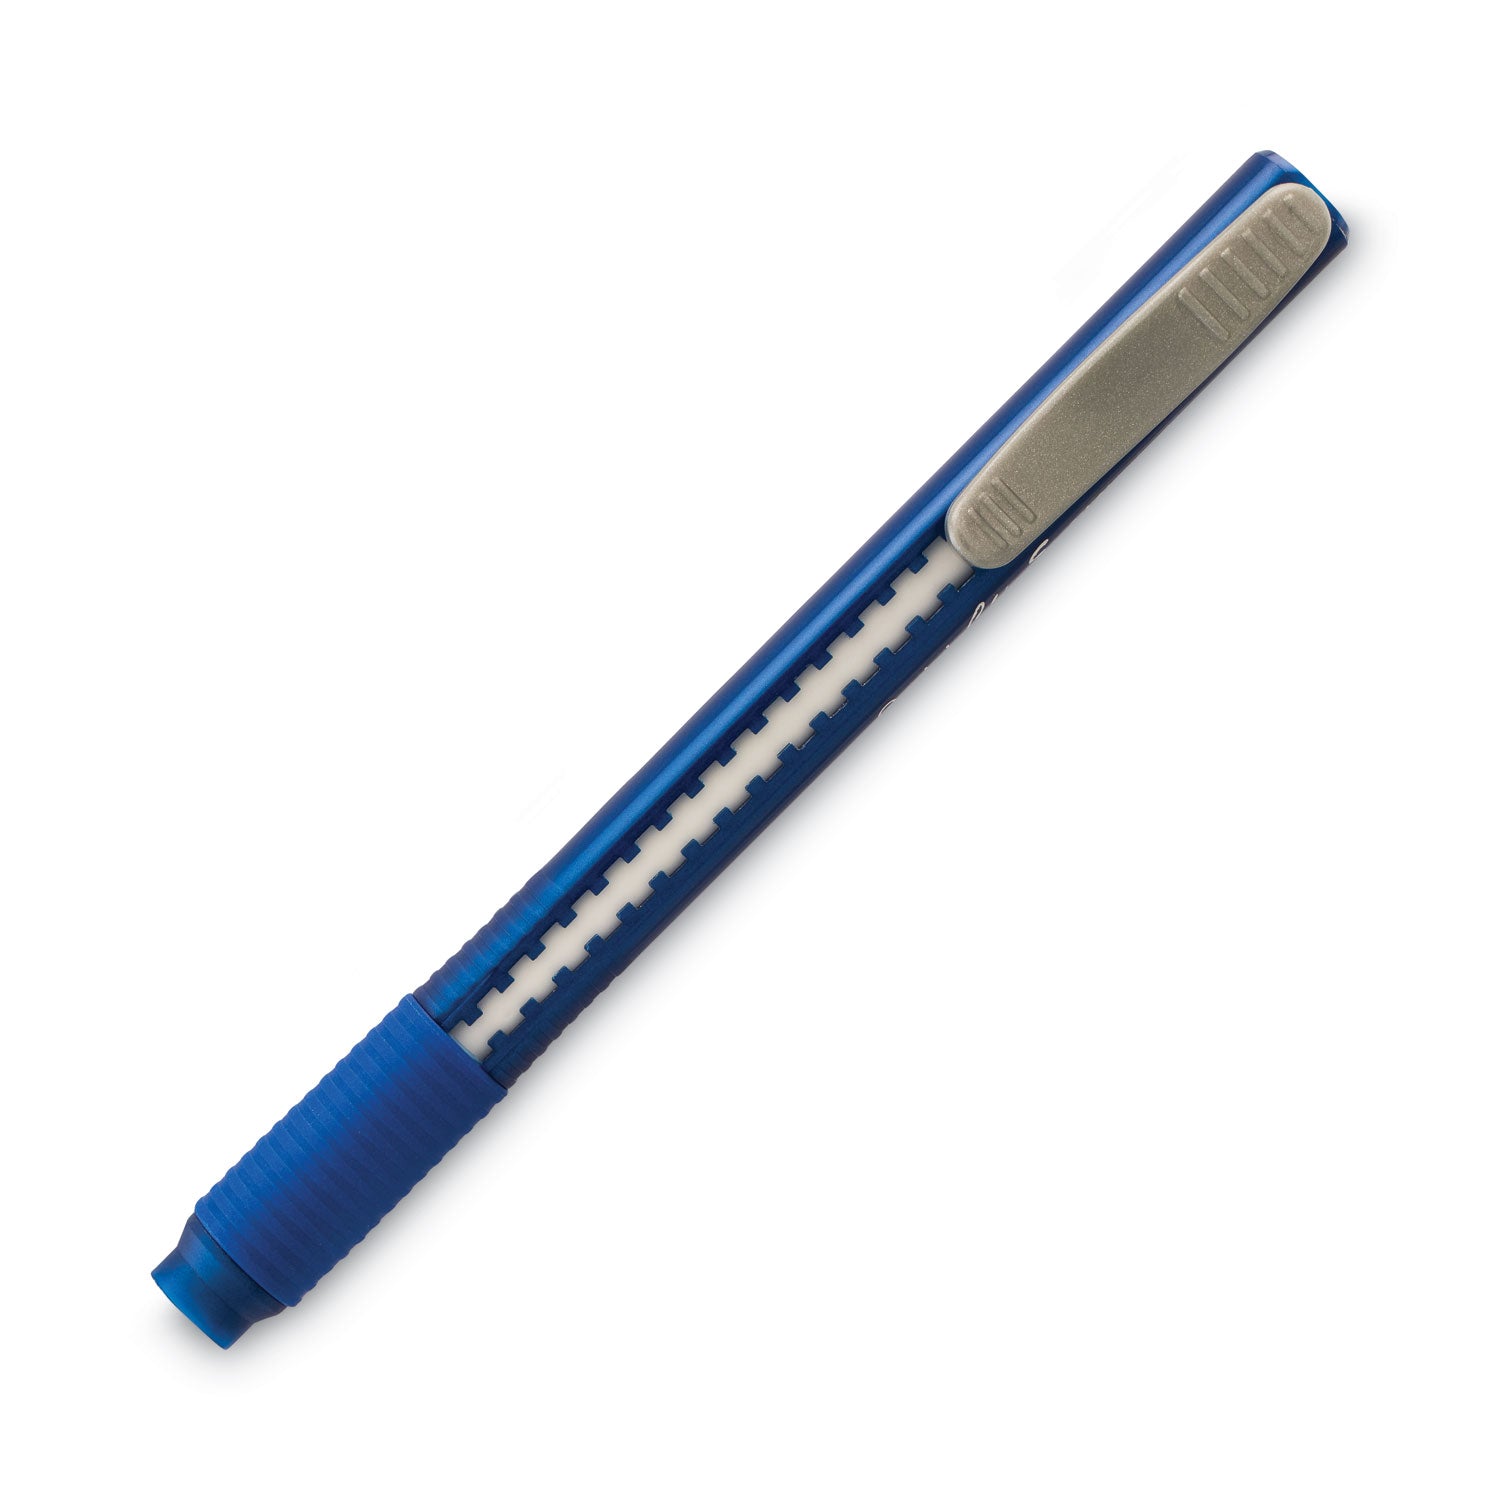 Clic Eraser Grip Eraser, For Pencil Marks, White Eraser, Blue Barrel - 